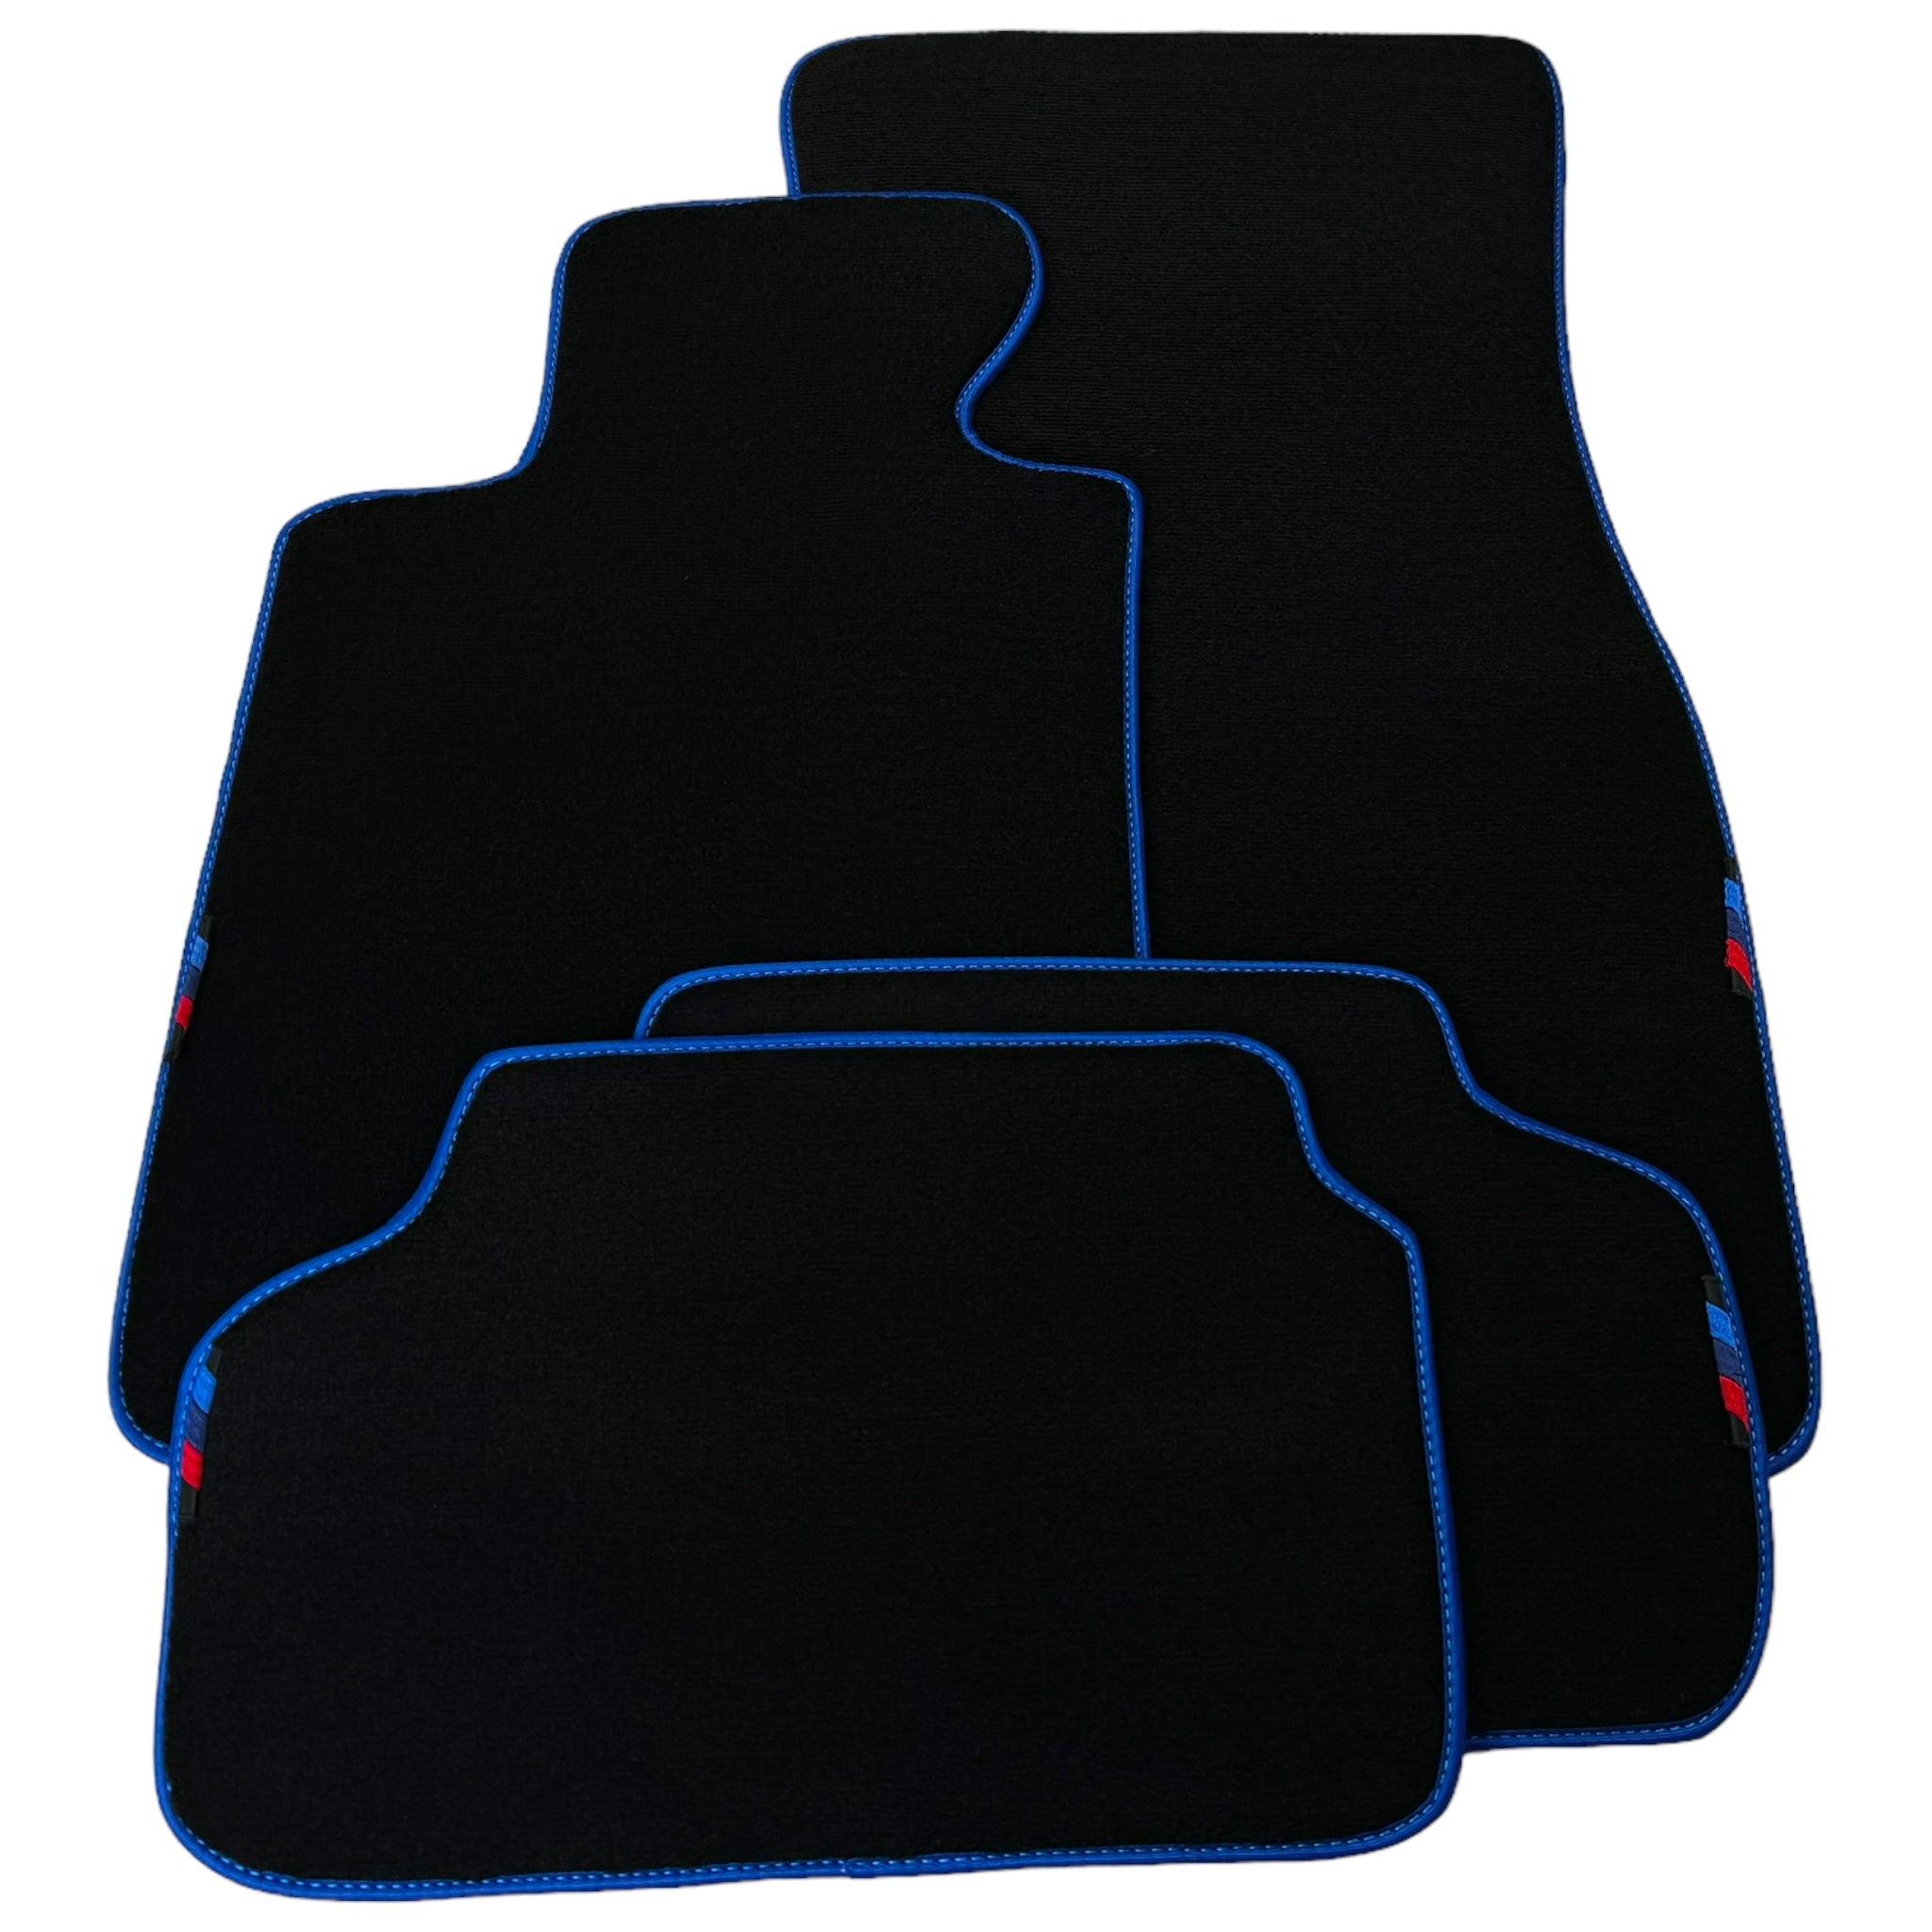 Black Floor Mats For BMW X5M E70 SUV | Blue Trim